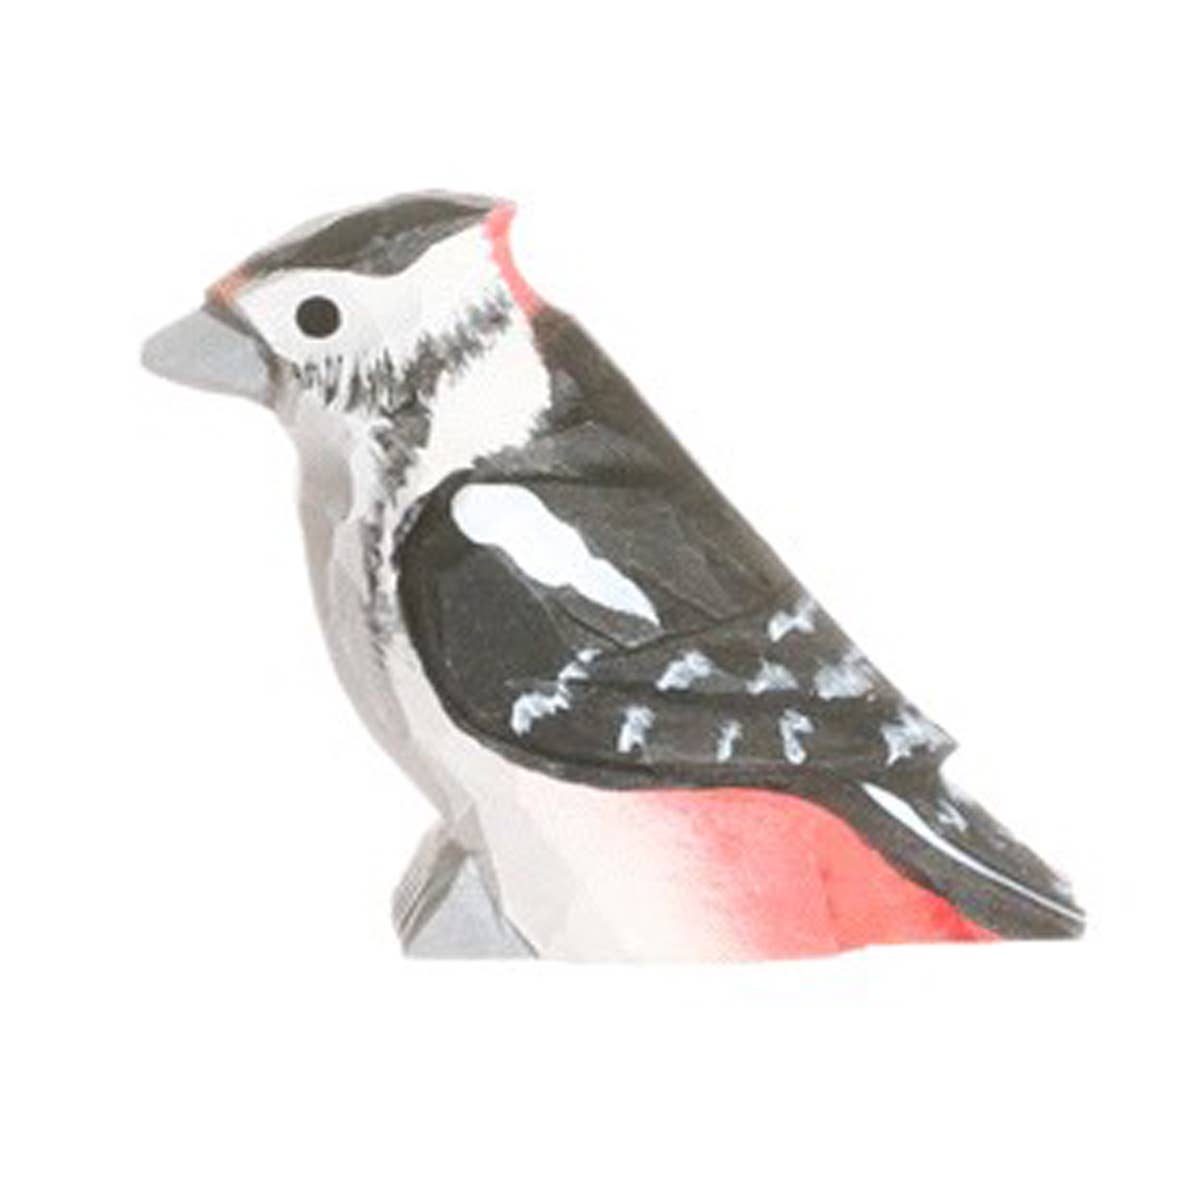 Wudimals® Wooden Woodpecker Animal Toy